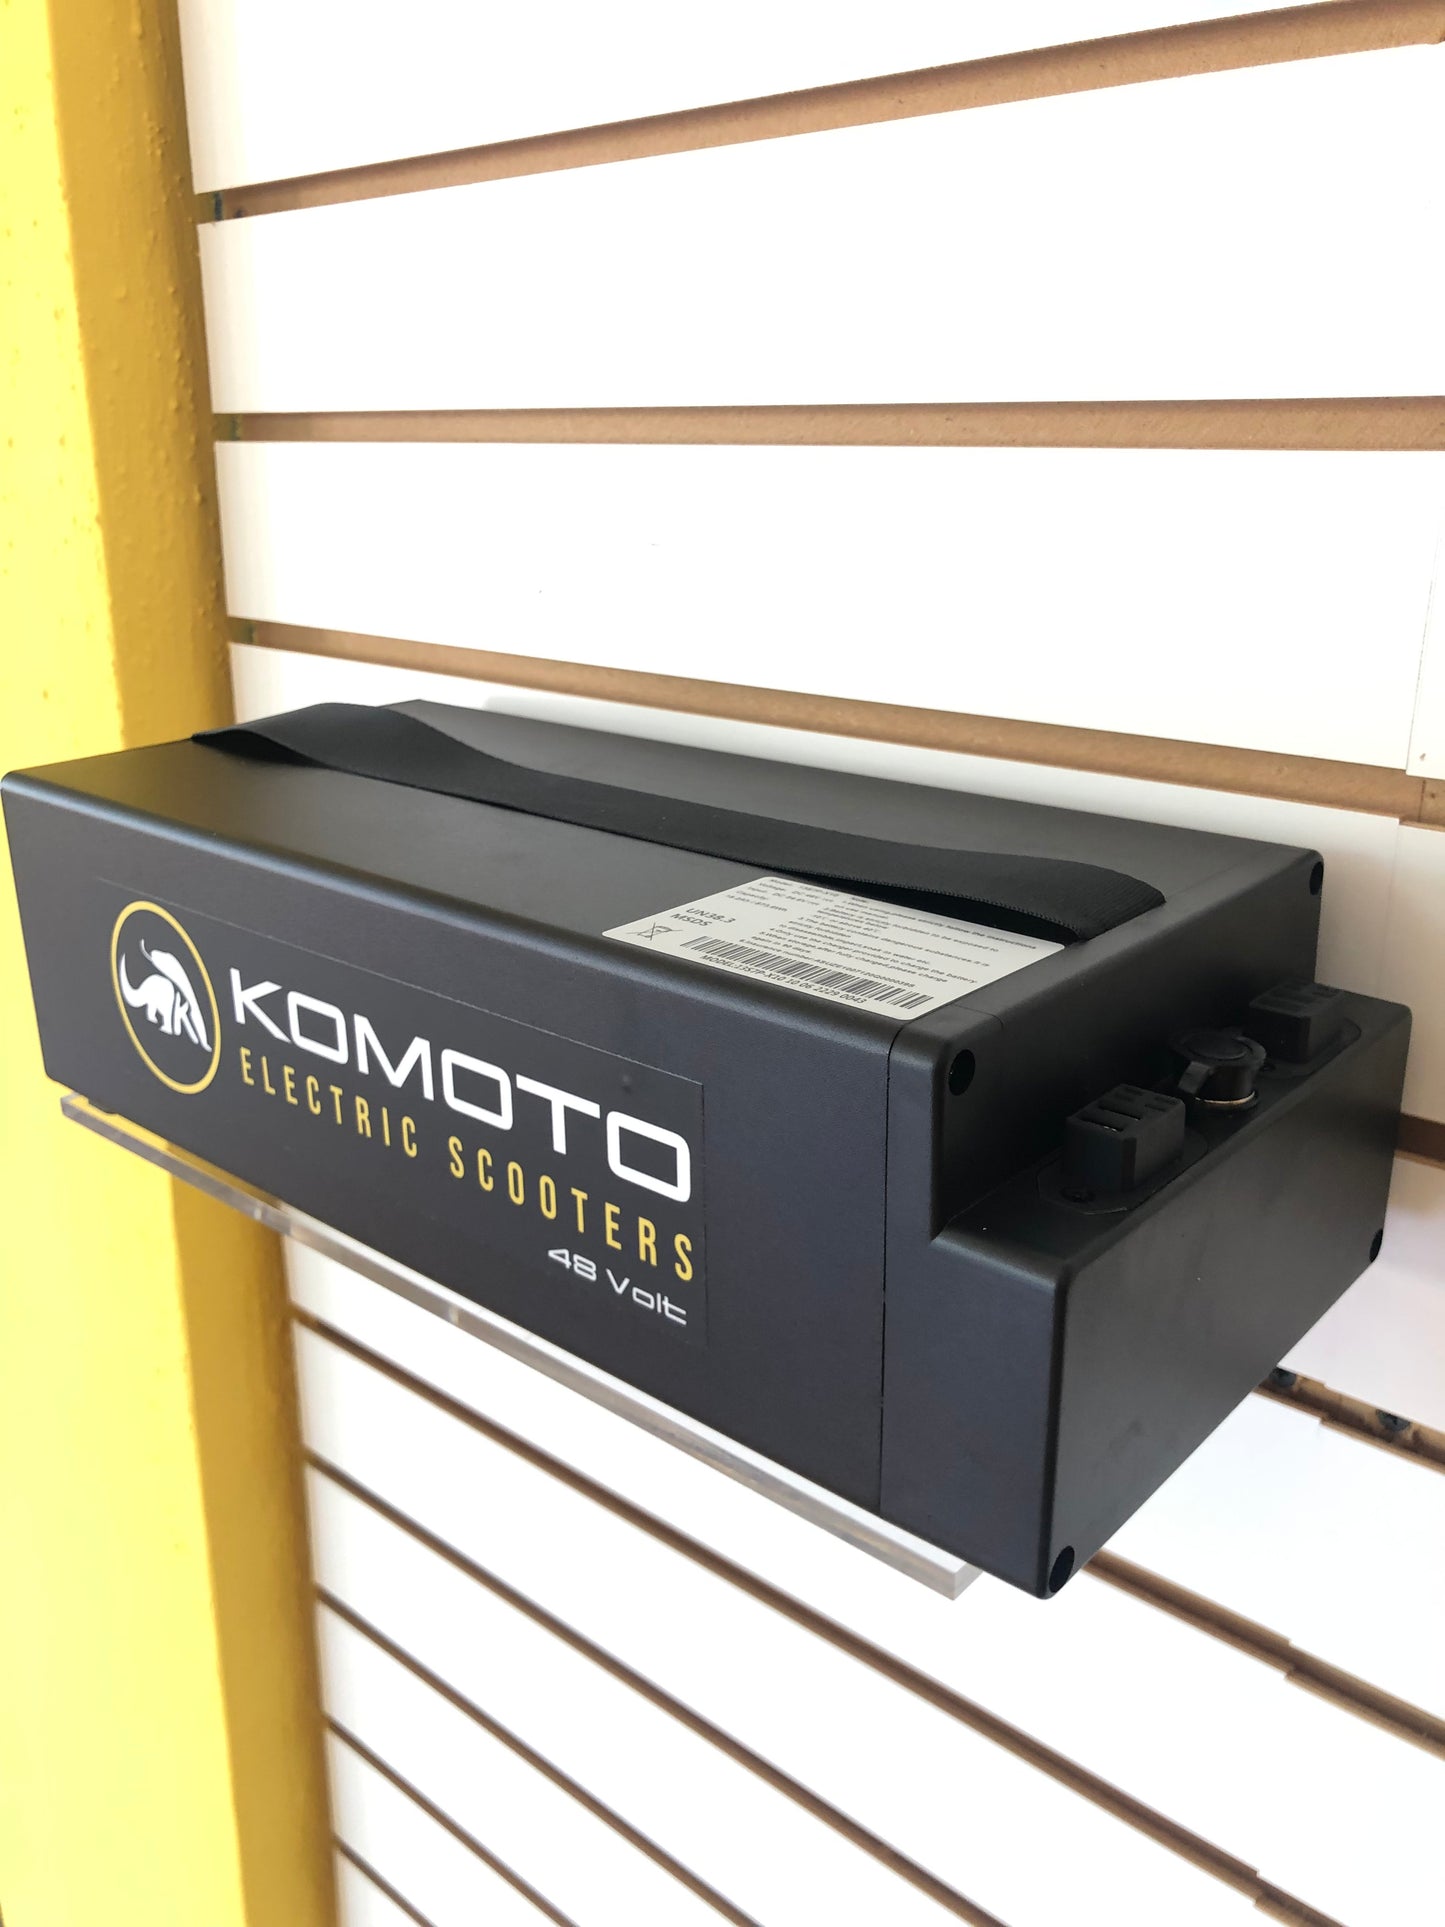 KOMOTO D2400 18.2Ah 48V Removable Battery Pack